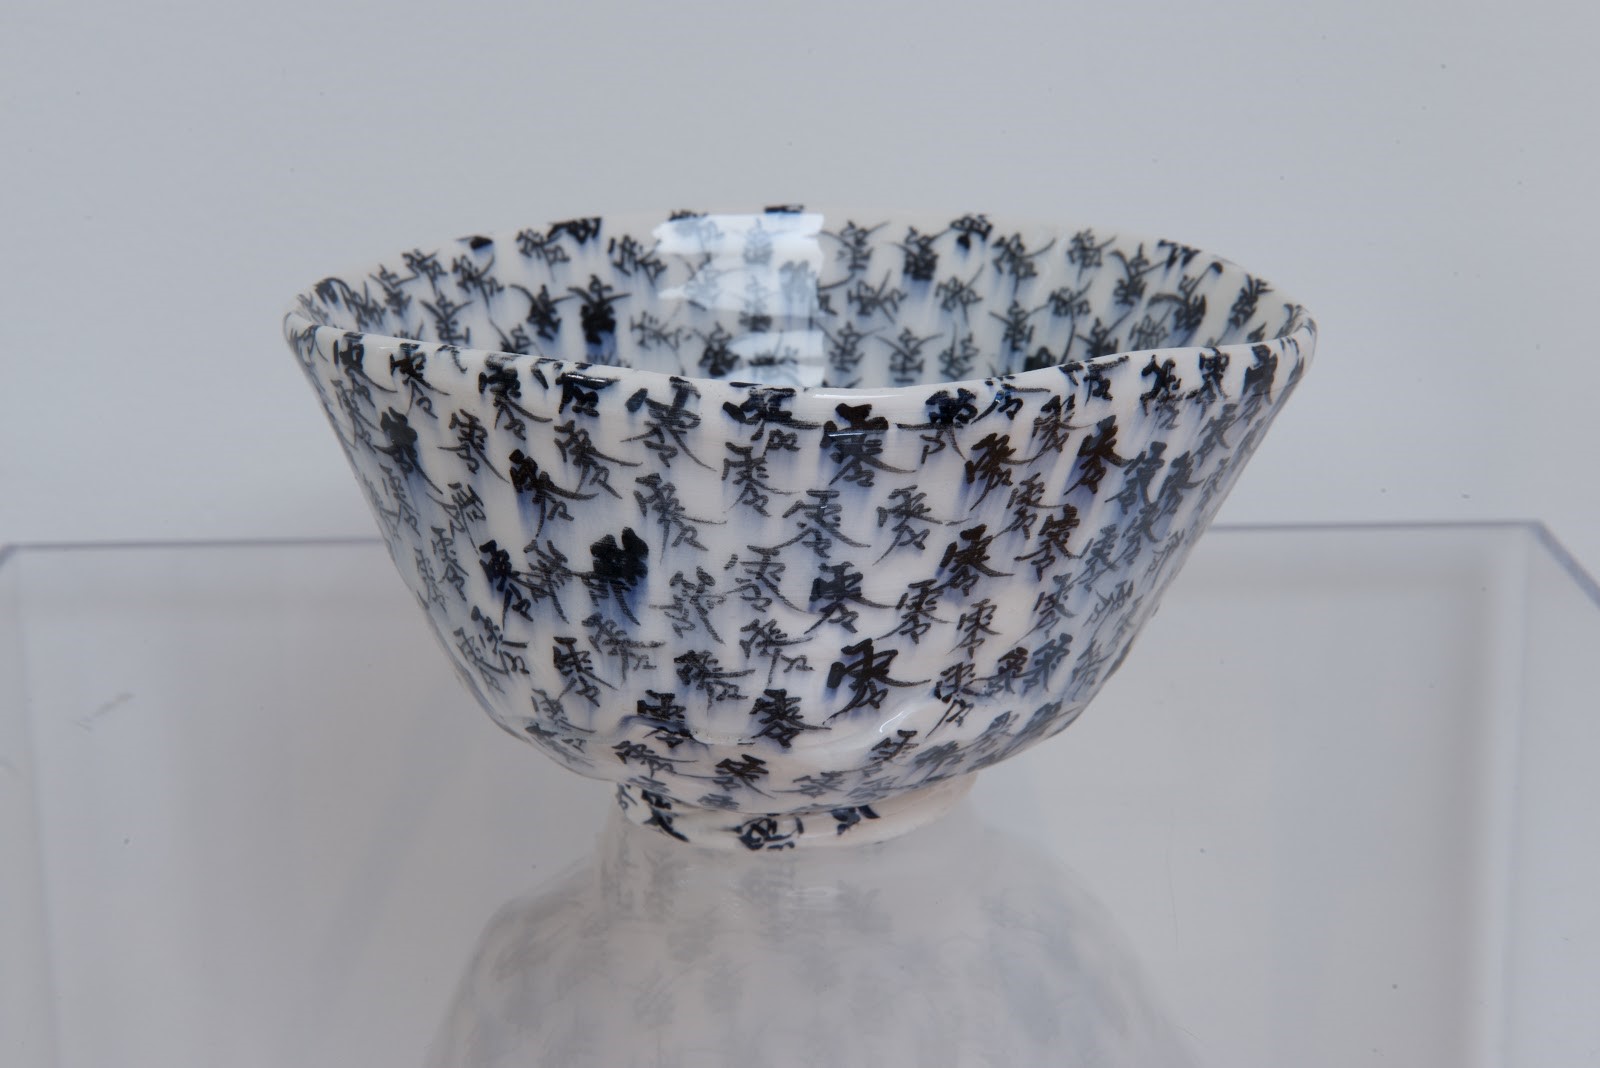 Mineo Mizuno, Tea bowl, 2019, courtesy of the artist, © Mineo Mizuno